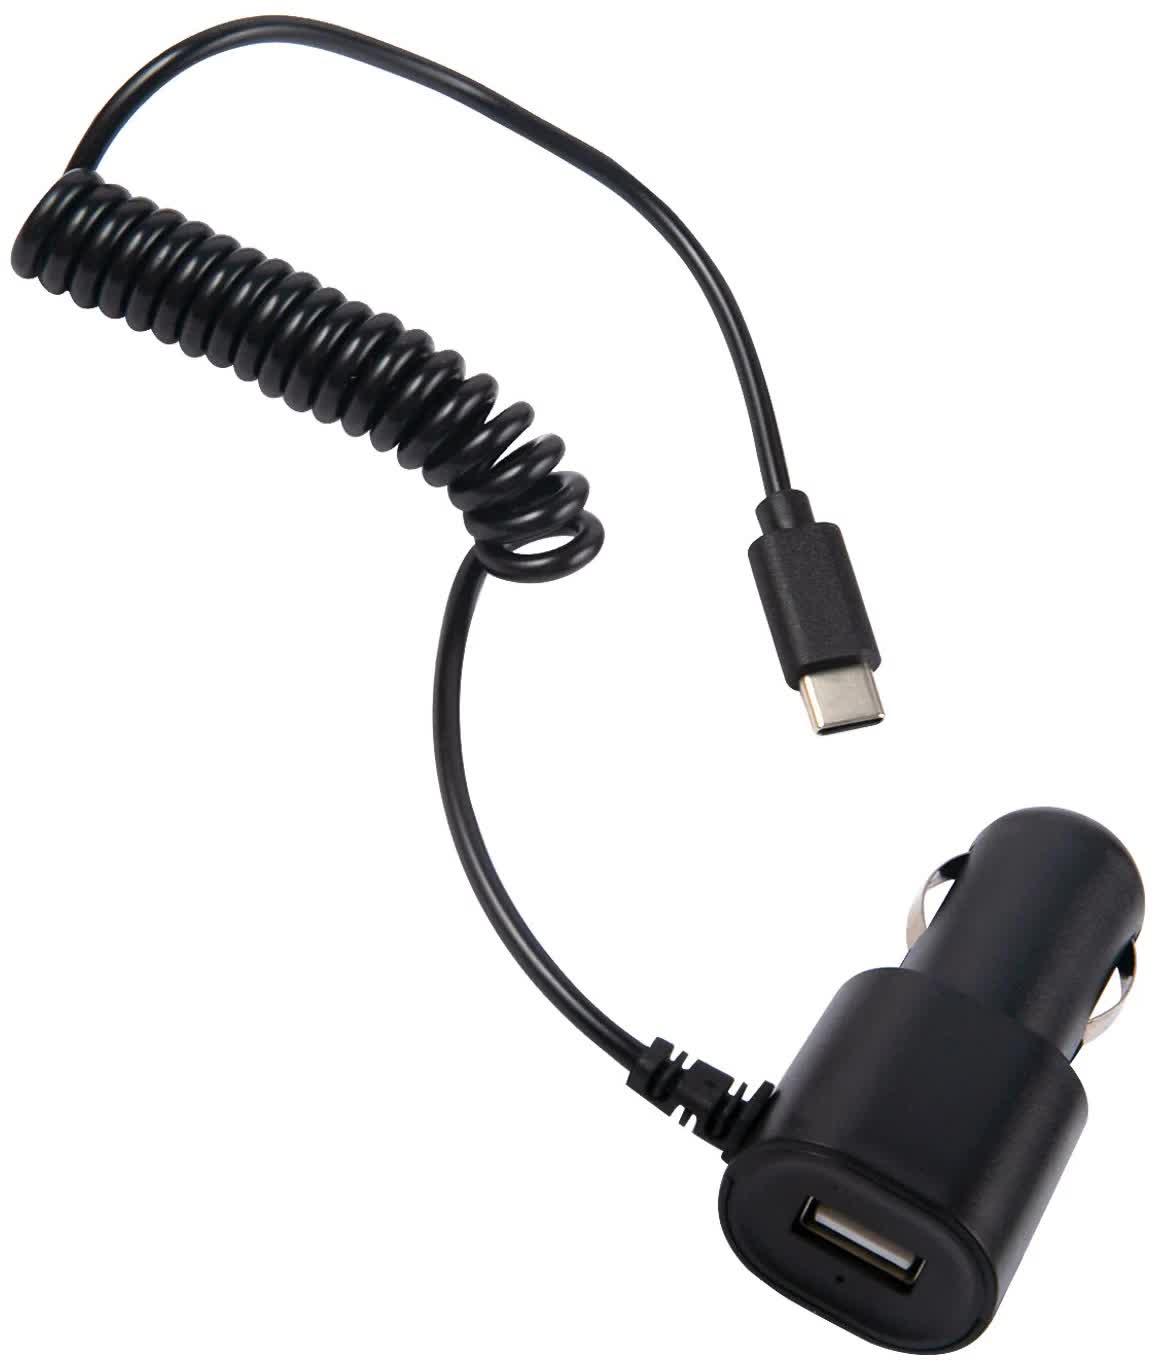 Автомобильное зарядное устройство Red Line Tech 1 USB (модель AC-1A), 1A кабель Type-C, черный